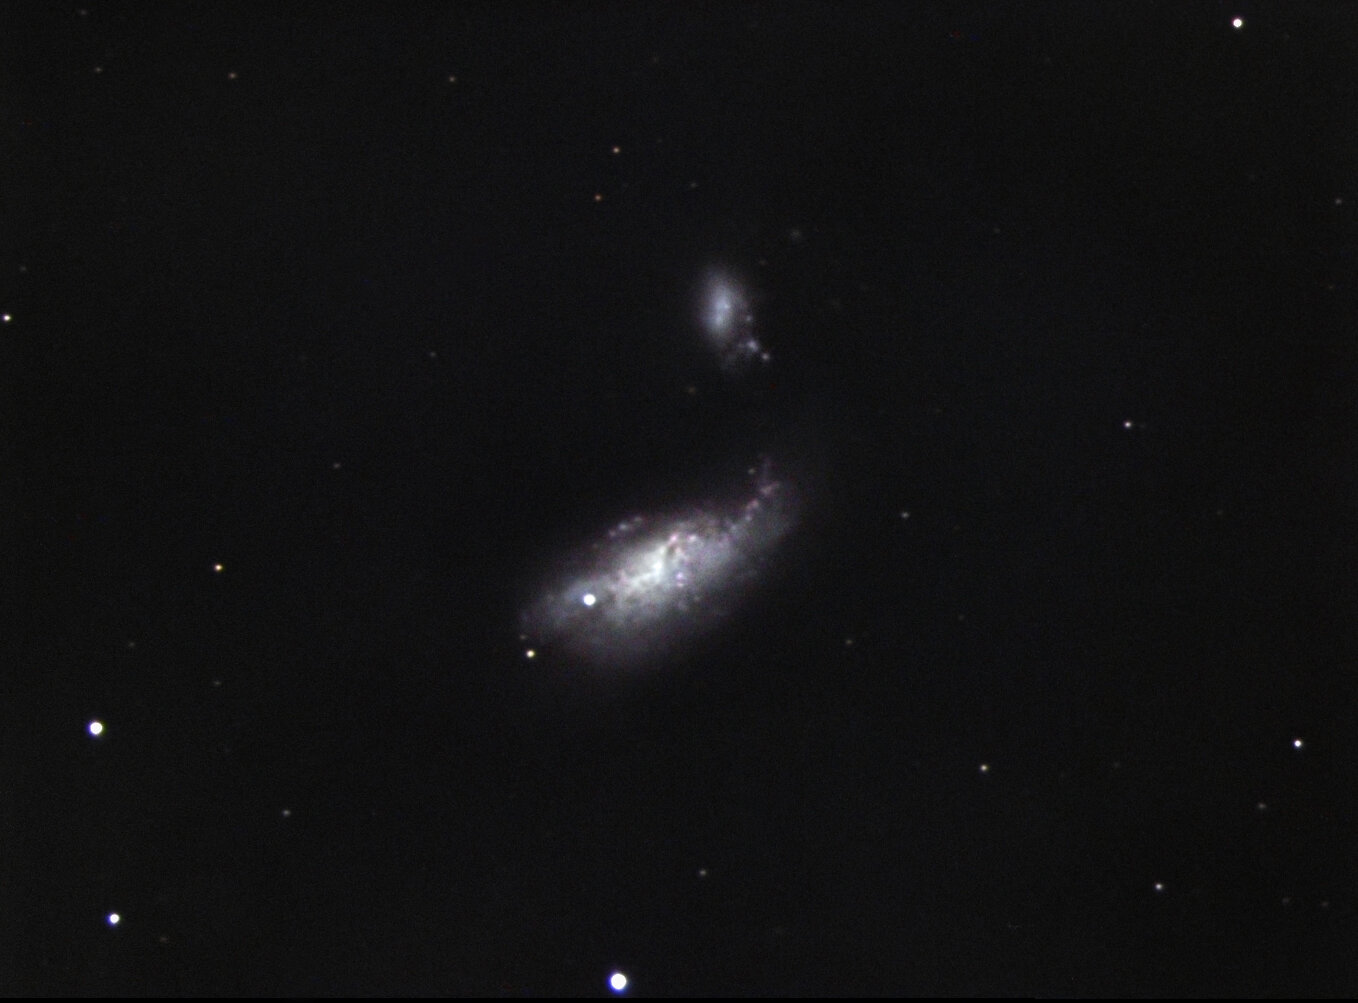 Cocoon galaxy and supernova 2008AX